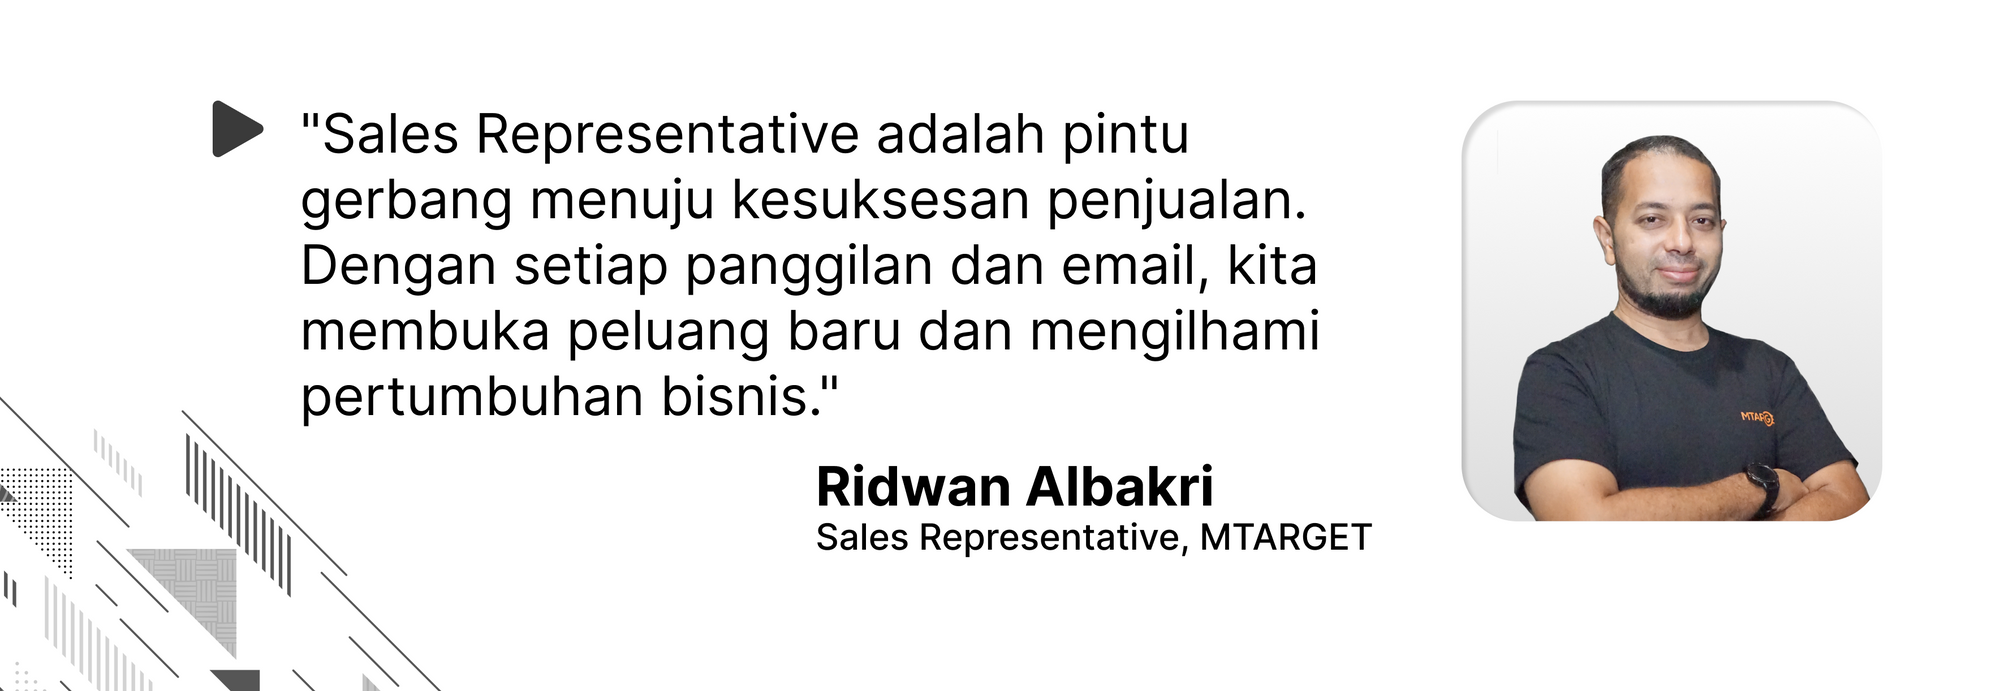 Quote oleh Ridwan Albakri, Sales Representative MTARGET